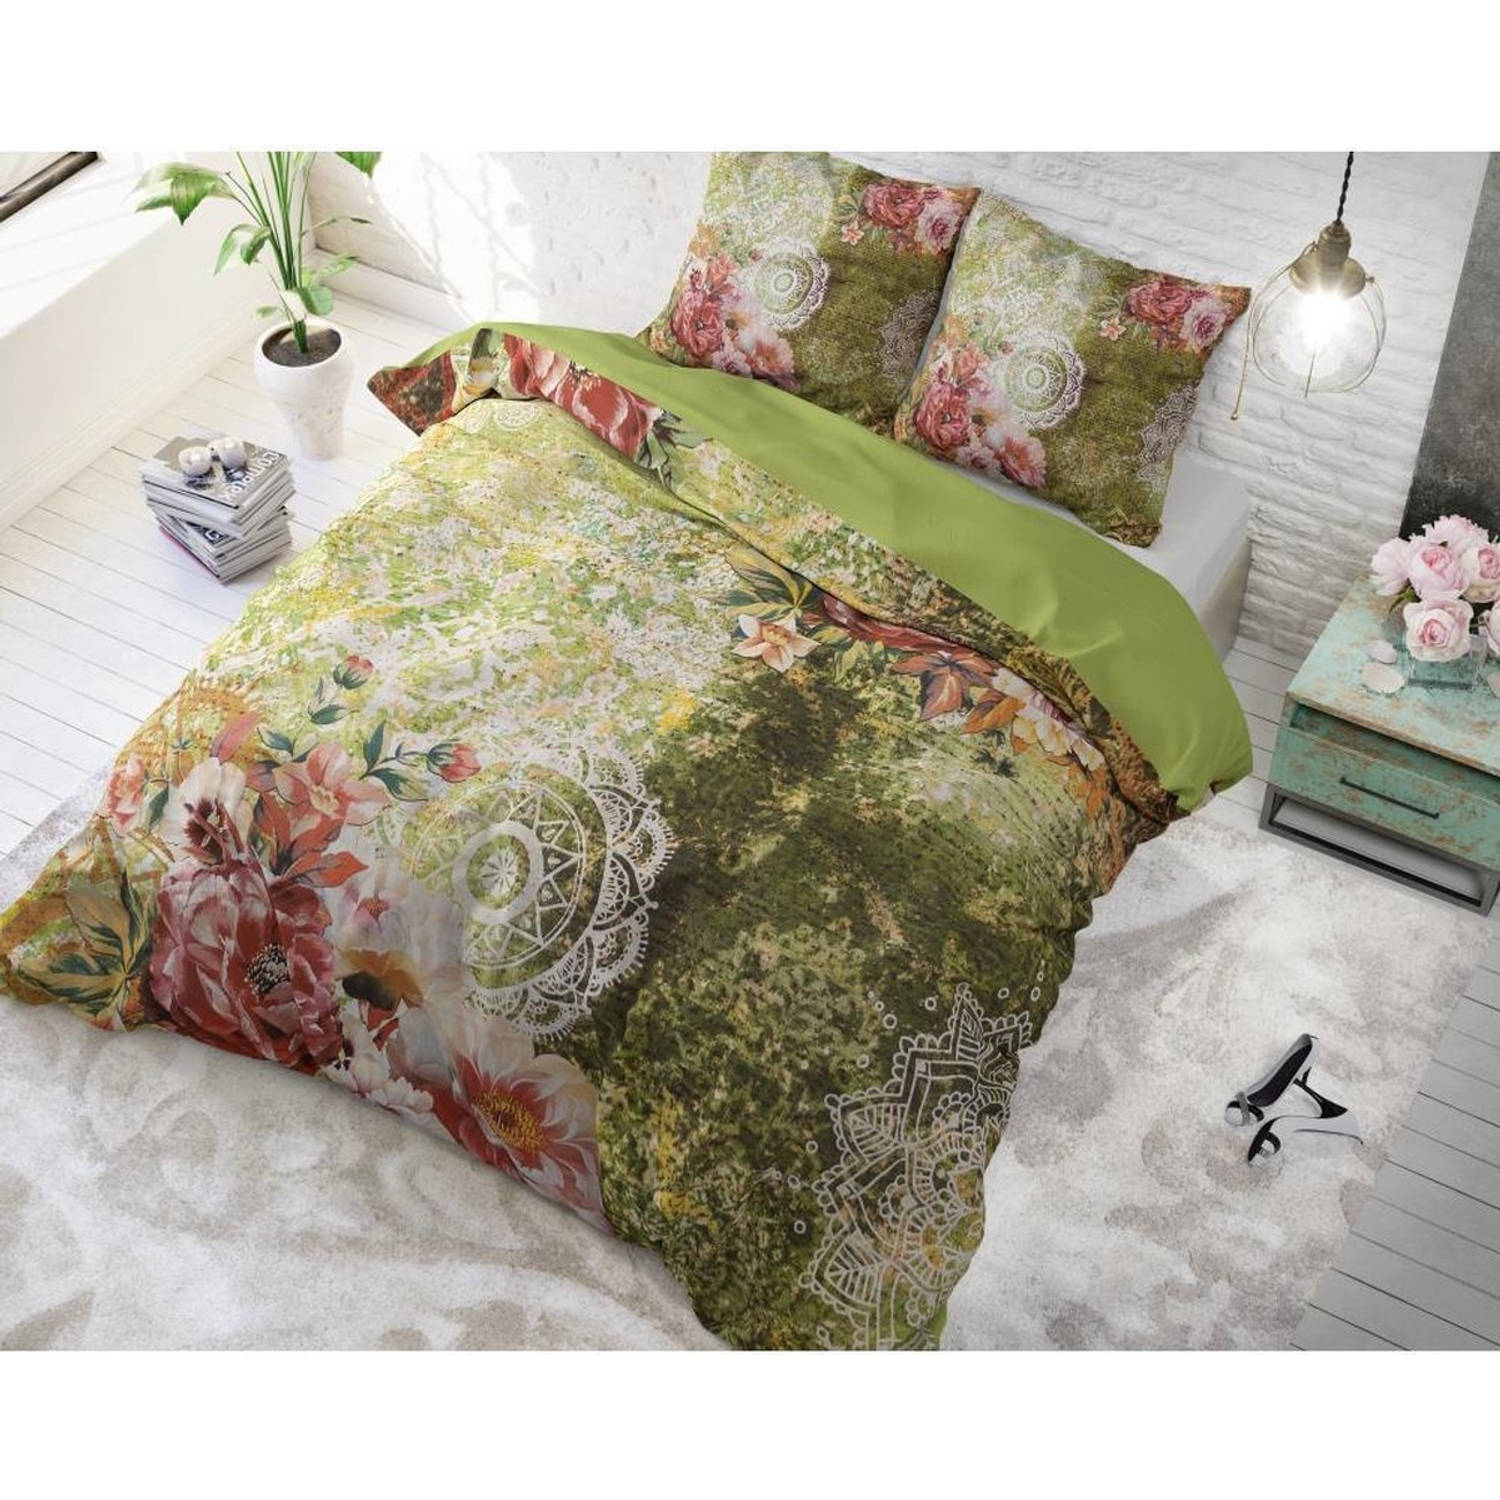 Dreamhouse Bedding Dbo Dh Green Flower Art Green 200x220